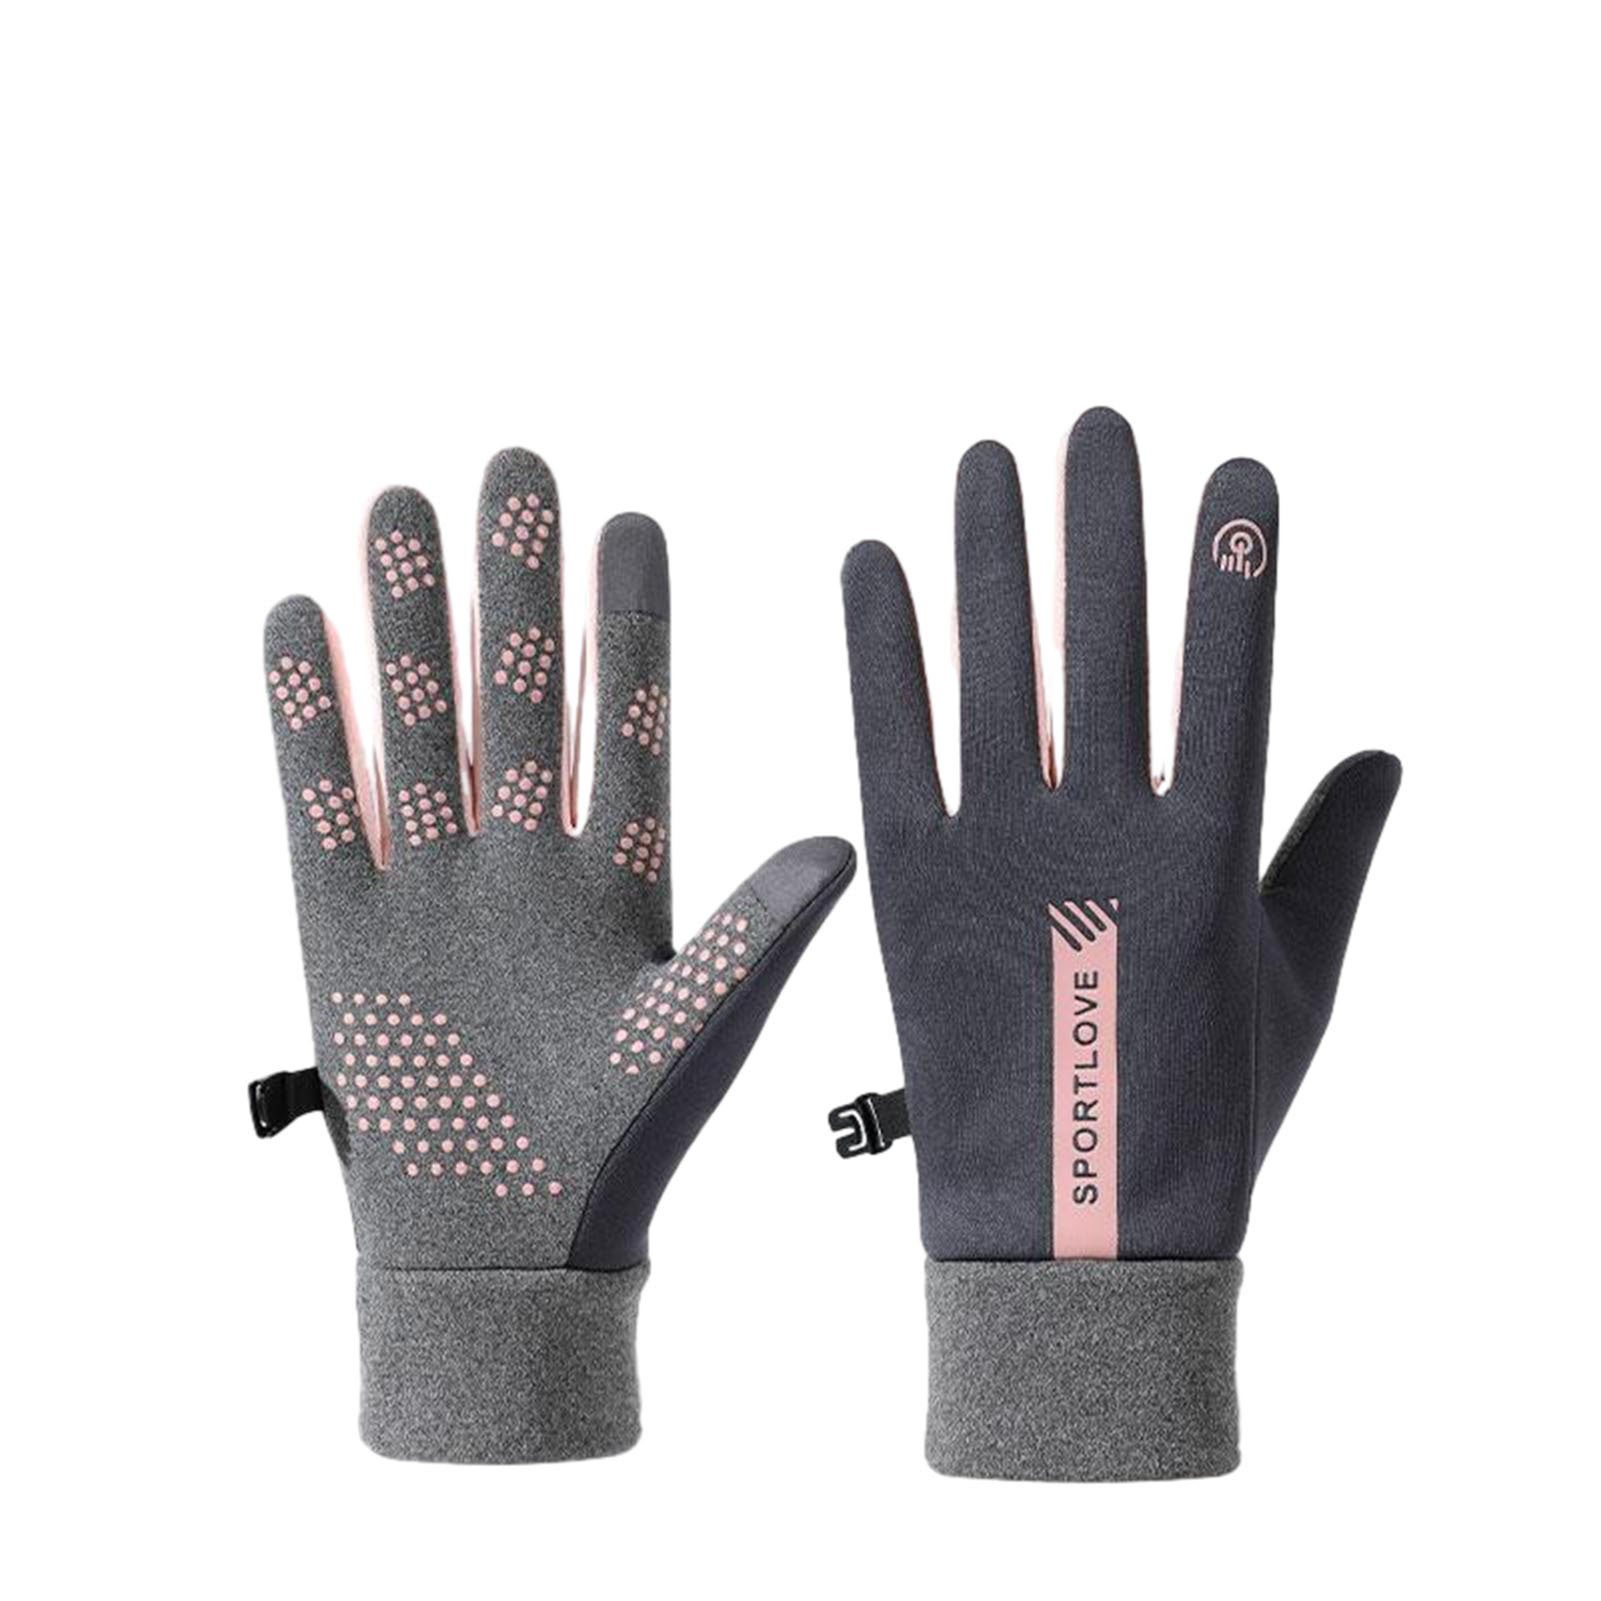 Fahrradhandschuhe Touchscreen-Wärmehandschuhe Blusmart pink gray